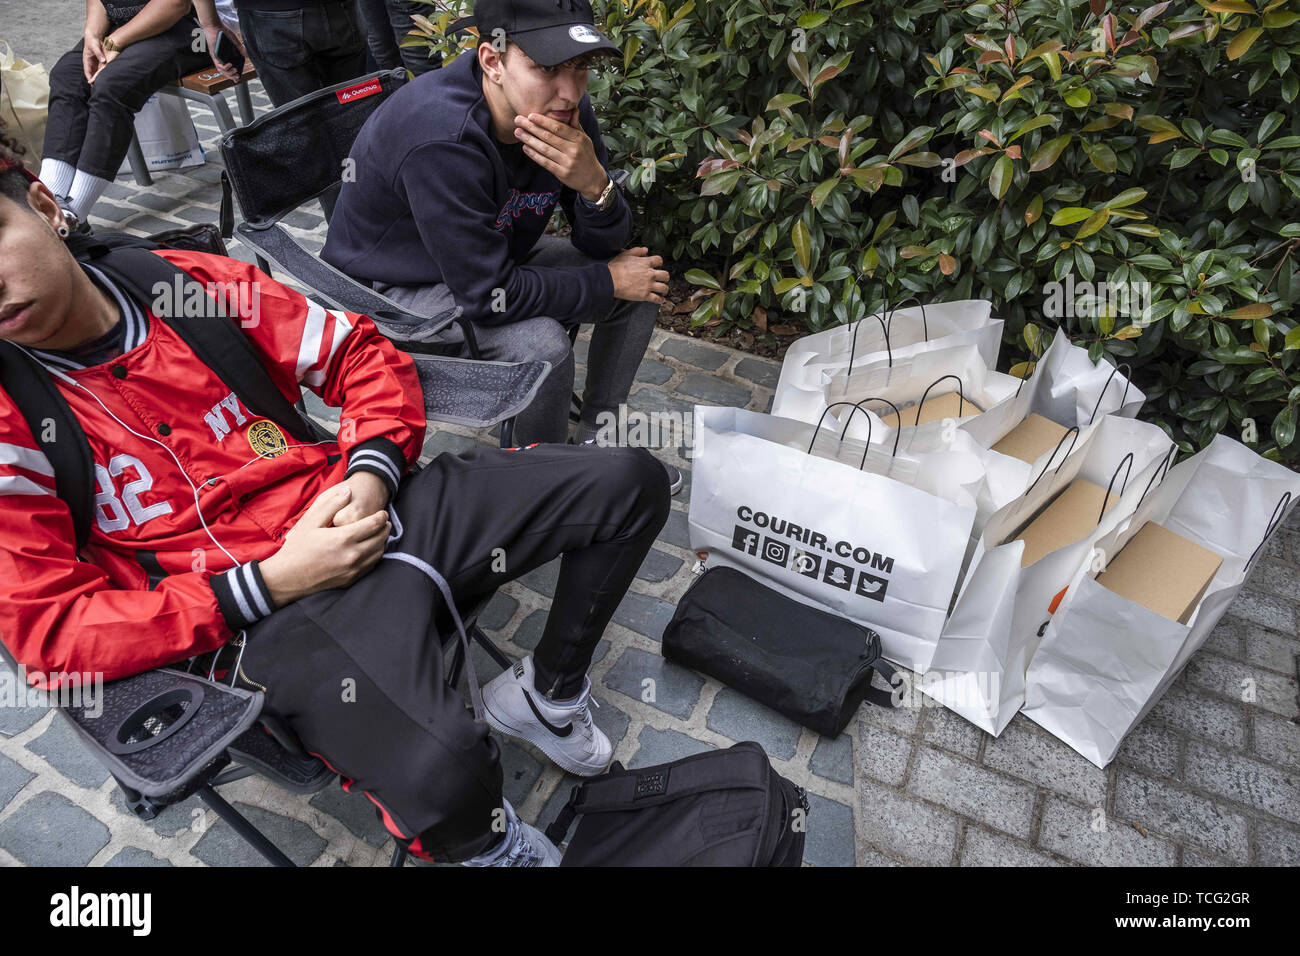 Barcelona, Cataluña, España. El 7 de junio de 2019. Dos hombres jóvenes  sentados con sus bolsas de compras que contiene el nuevo Adidas Yeezy Boost  350 modelo de zapato diseñado por Kanye